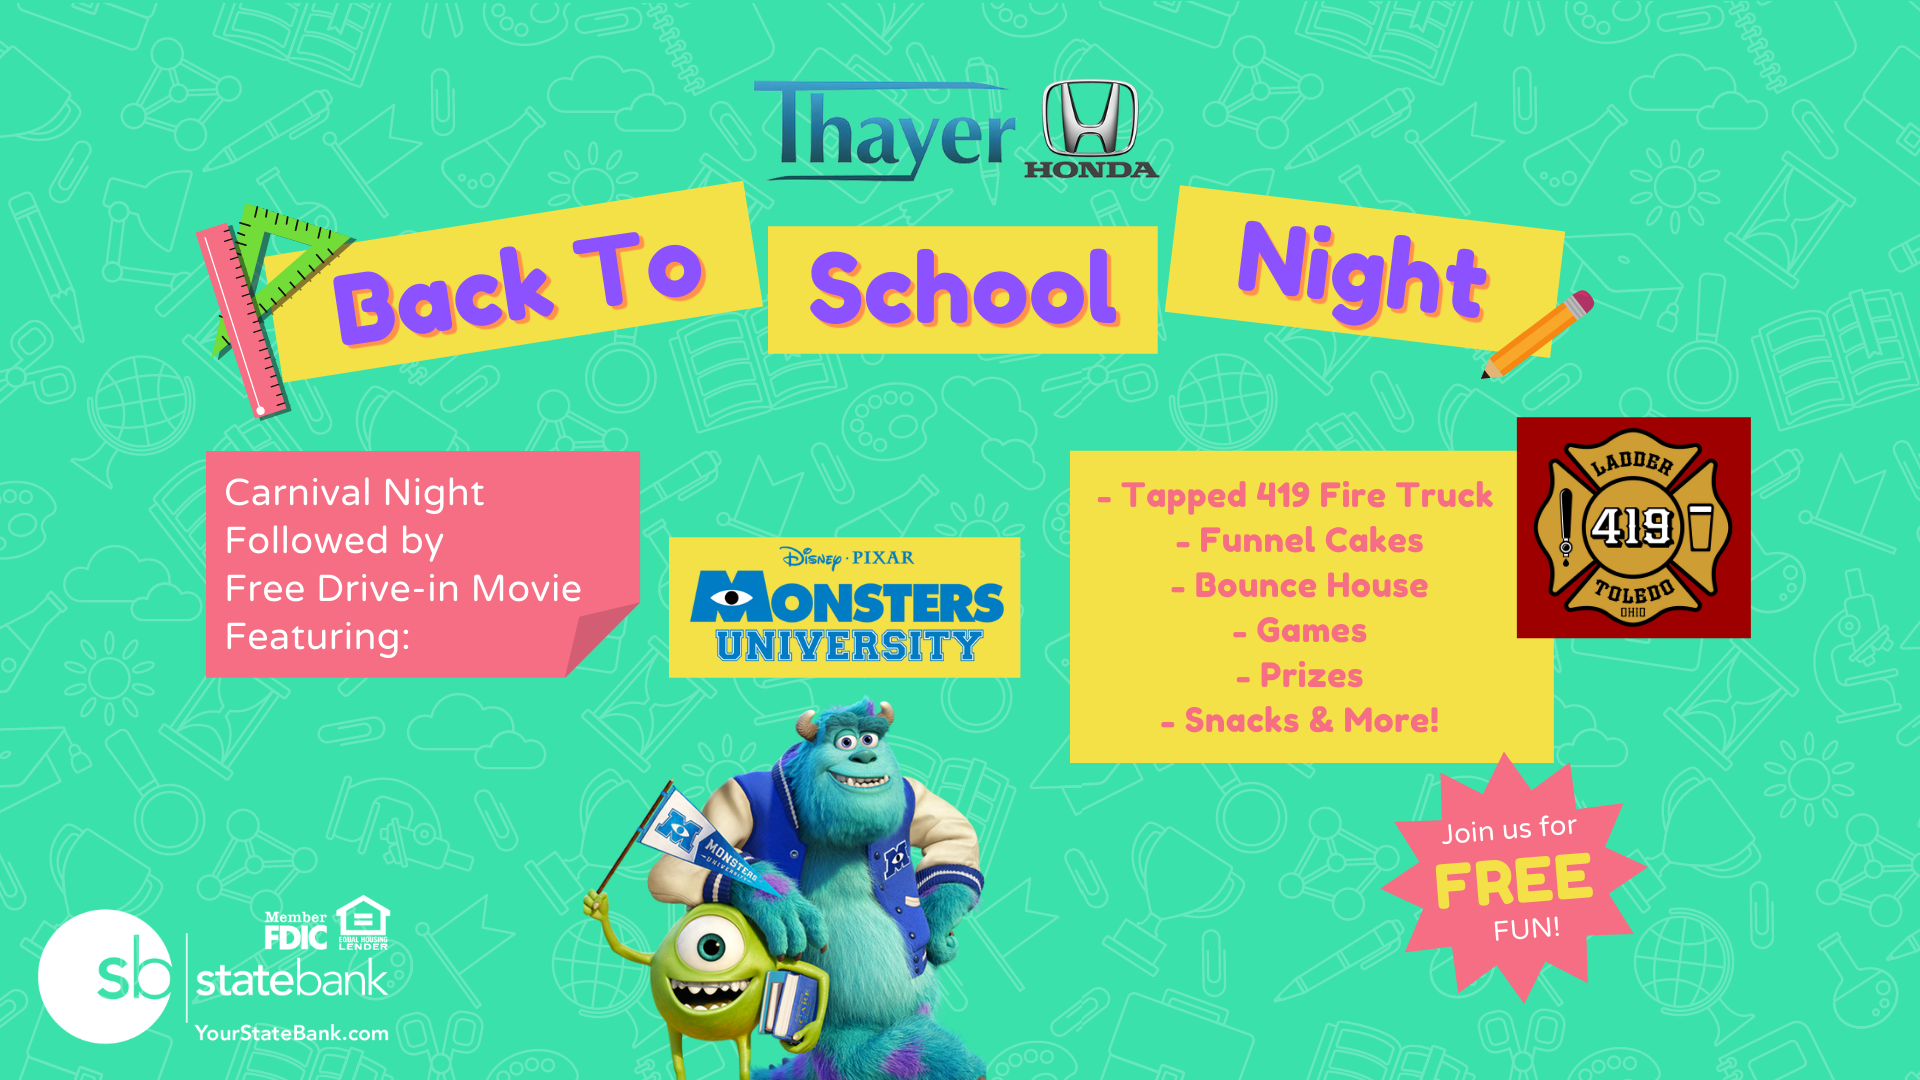 Thayer Honda: Back to School Night